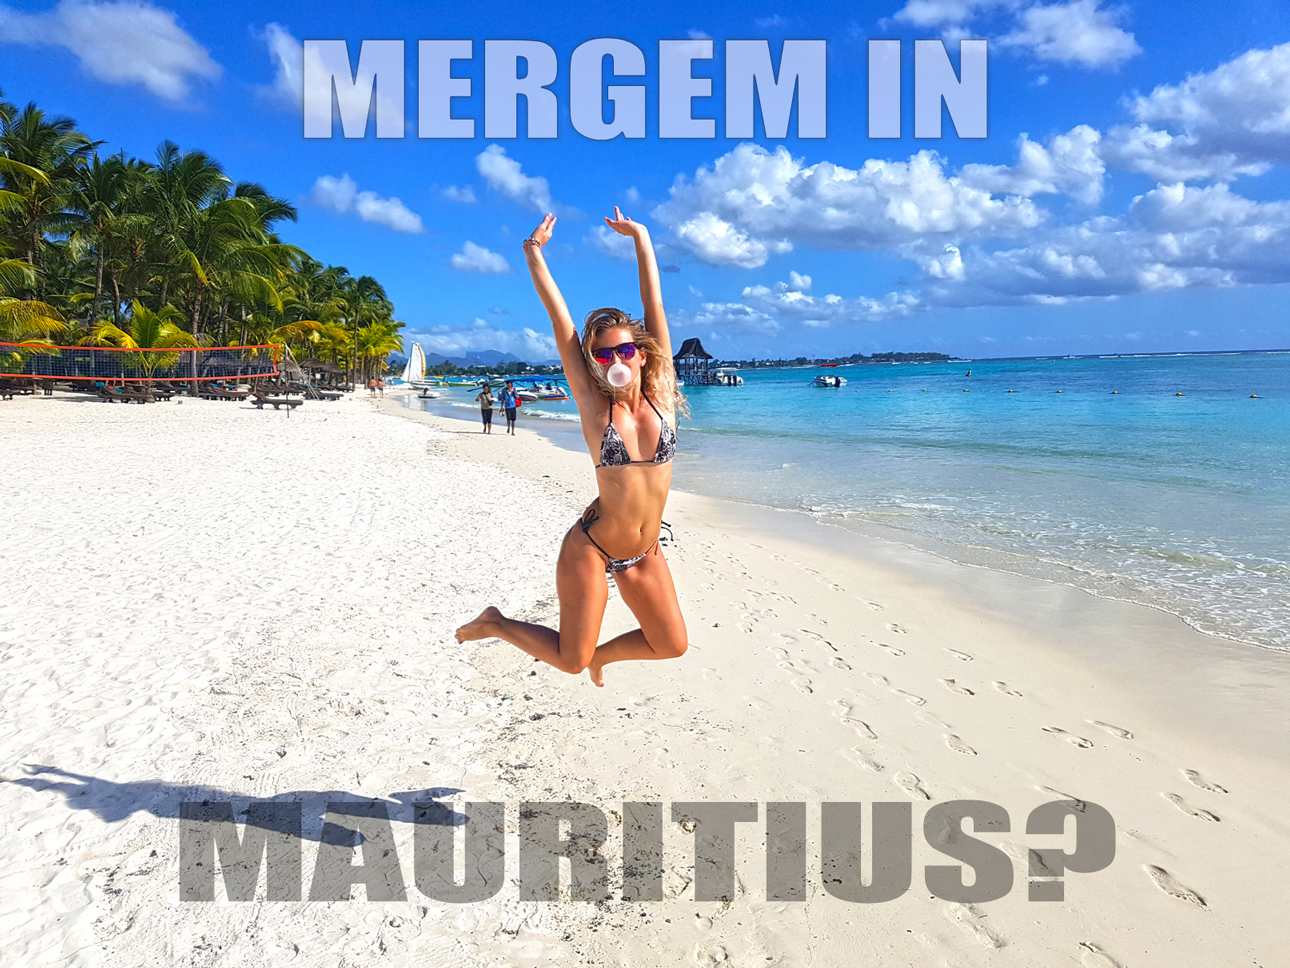 Mergem in Mauritius?